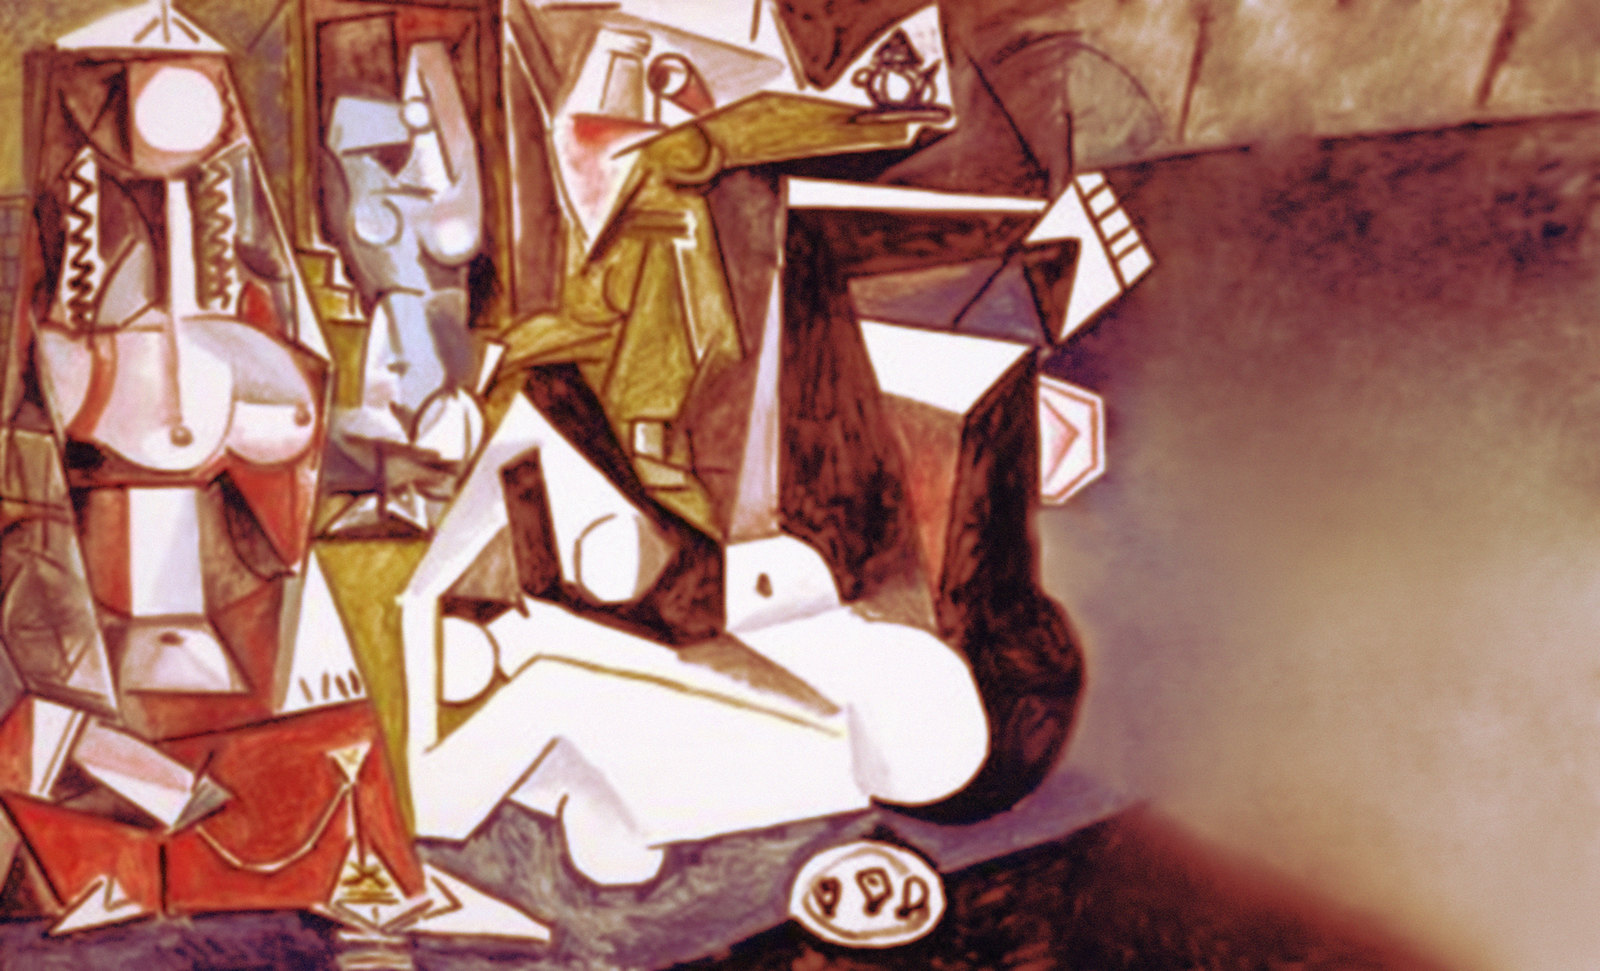 Odaliscas (Mujeres de Argel) yuxtaposición y deconstrucción de Pablo Picasso (1955), síntesis de Roy Lichtenstein (1963).